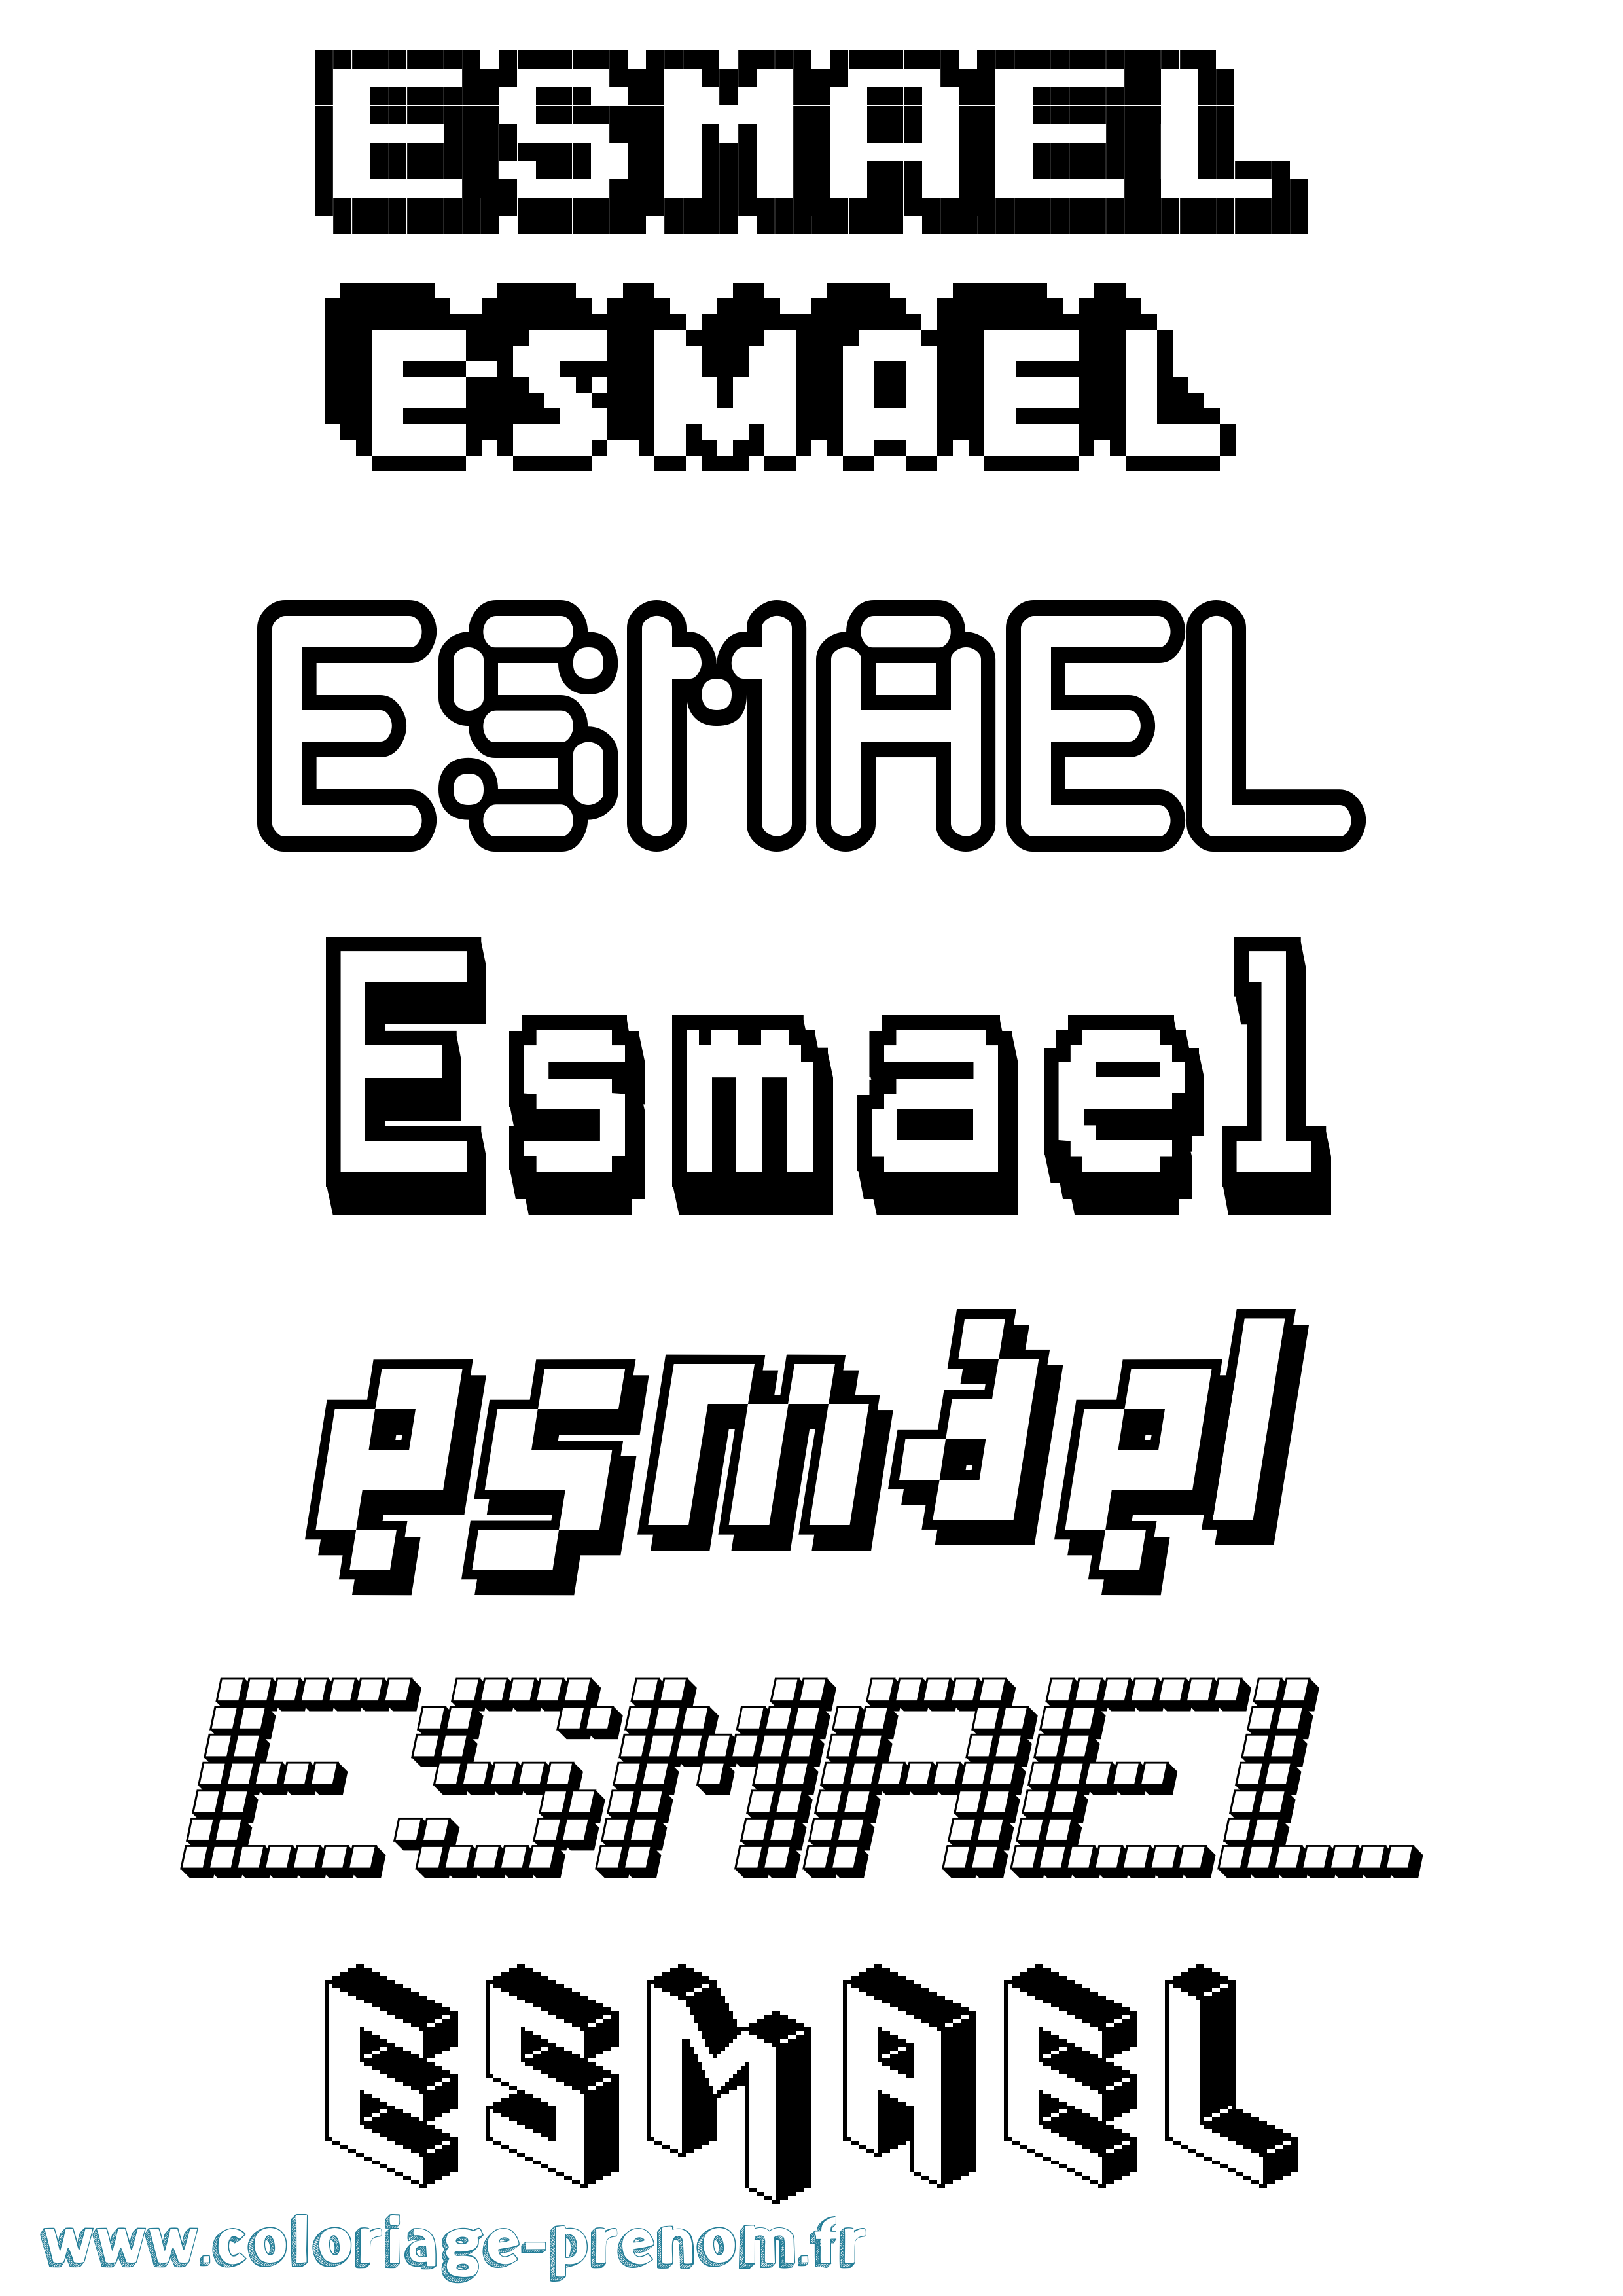 Coloriage prénom Esmael Pixel